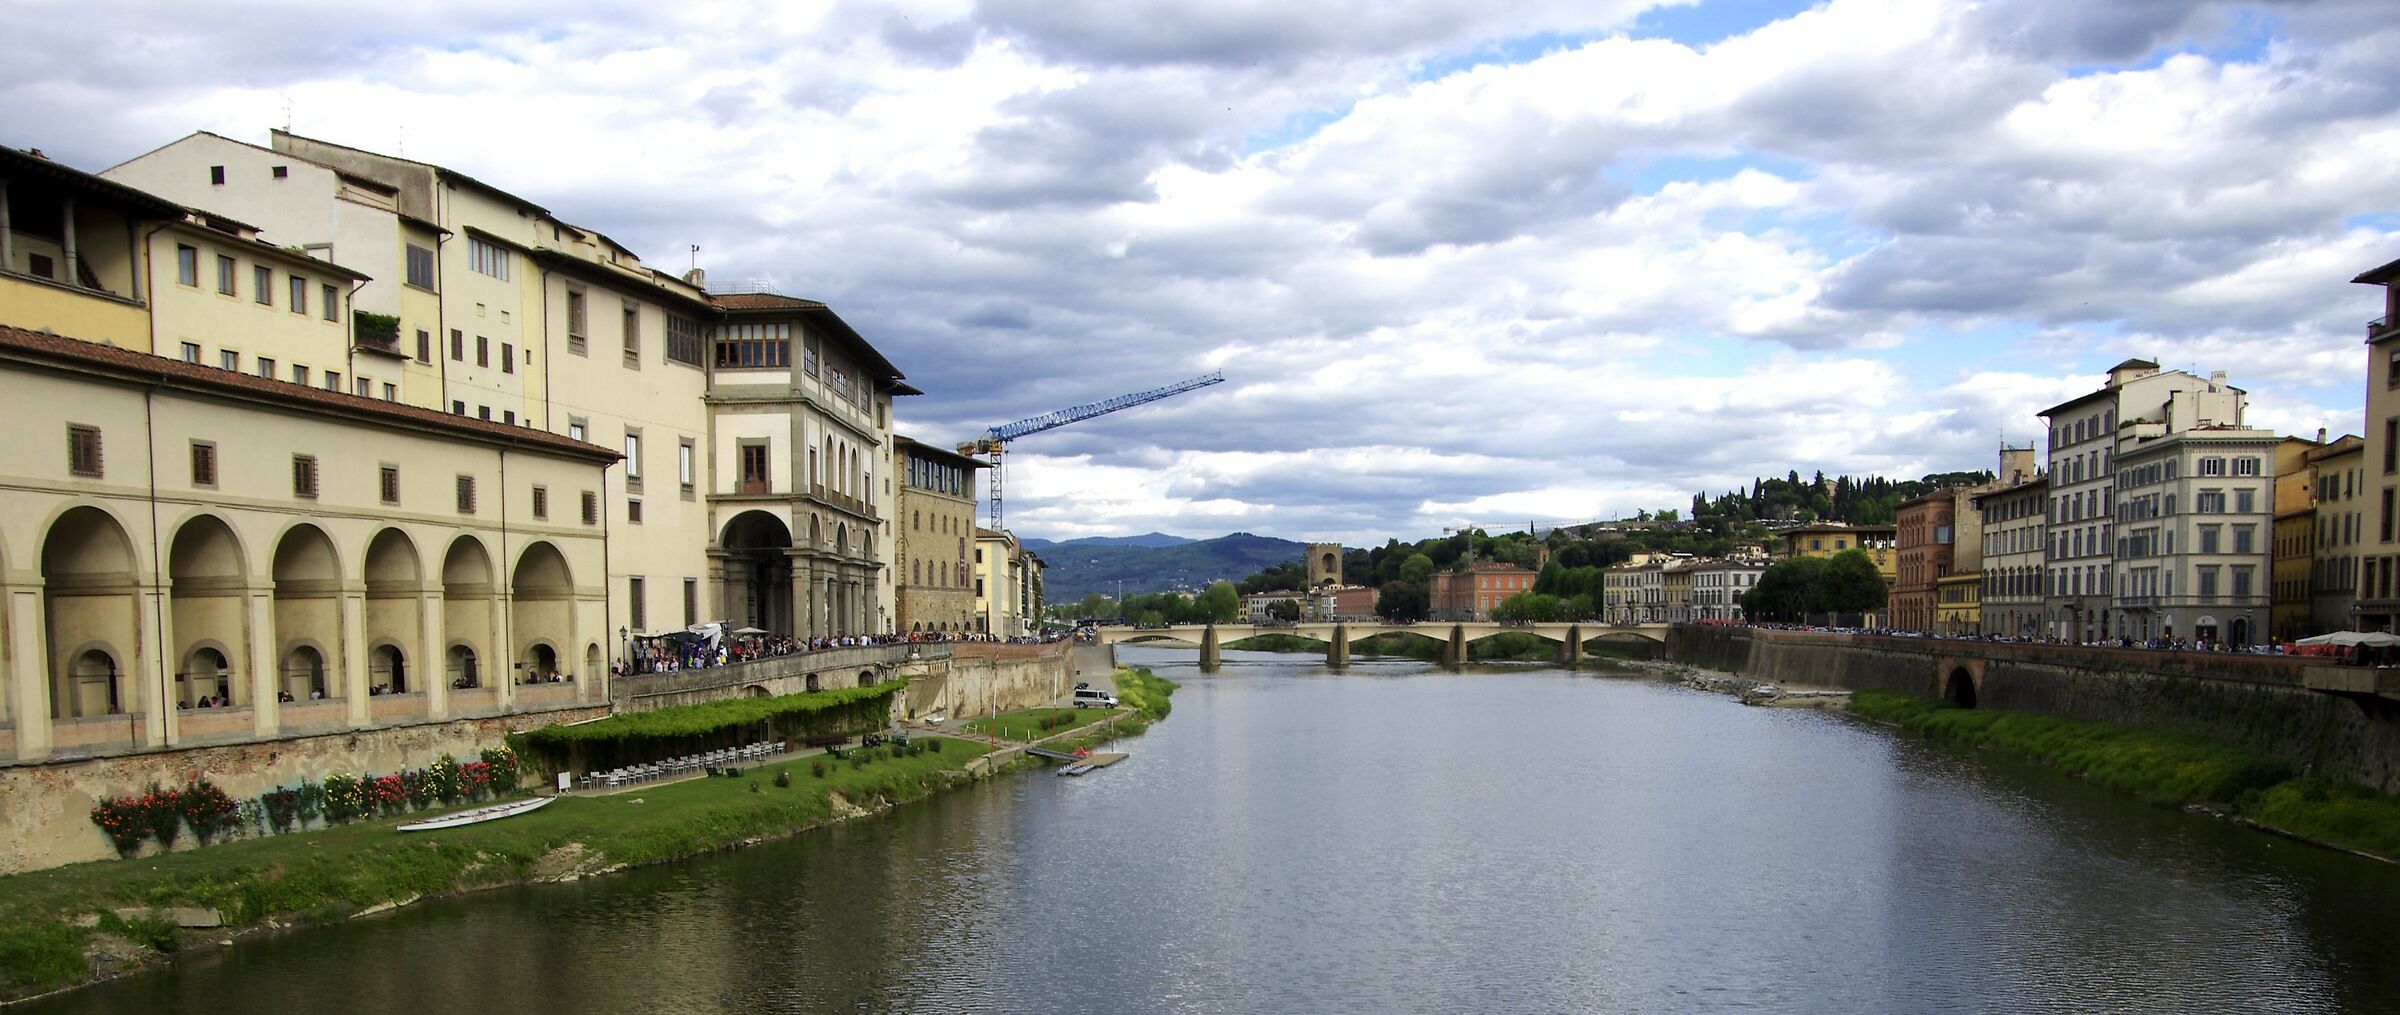 Firenze - Arno d'argento...